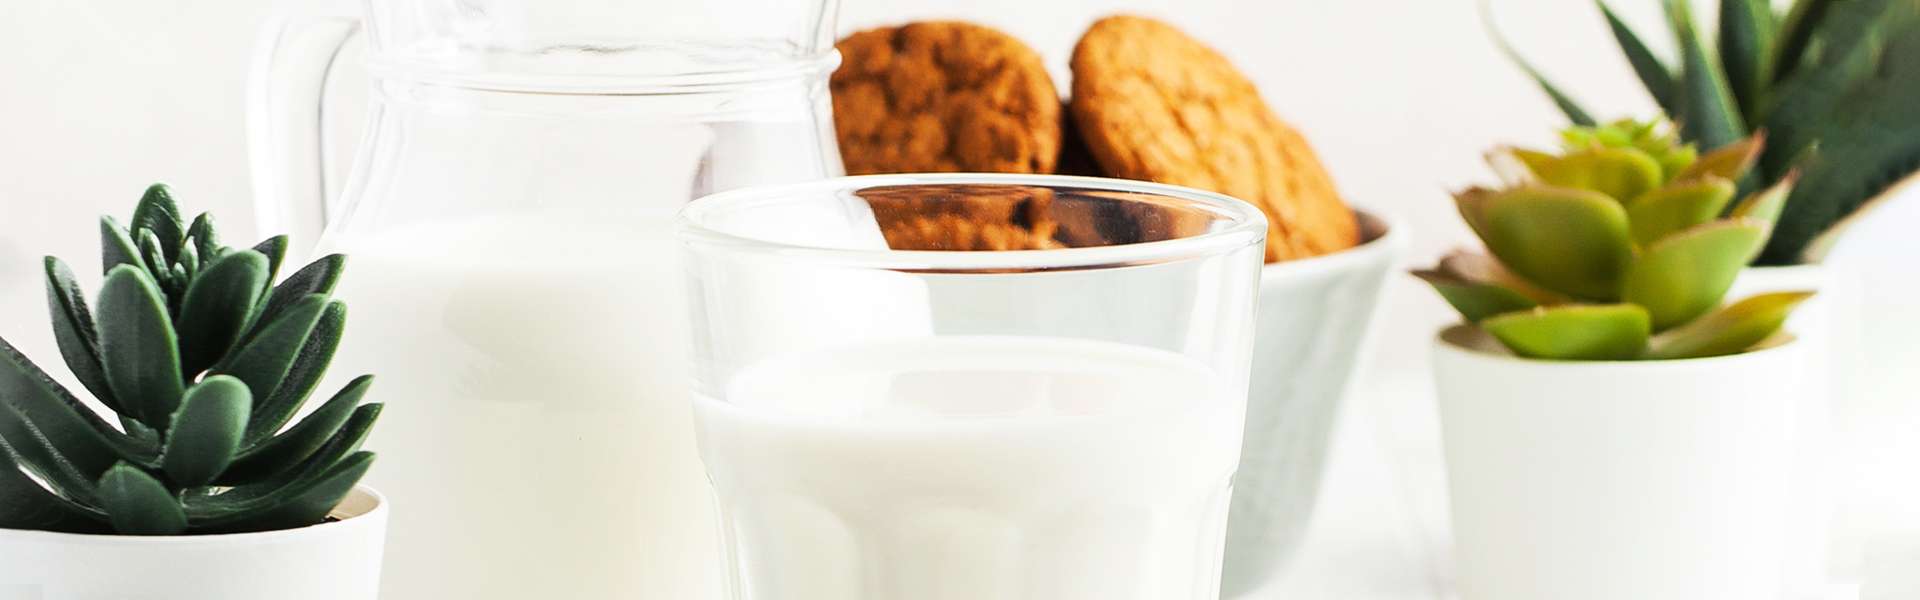 ¿Leche o no leche?